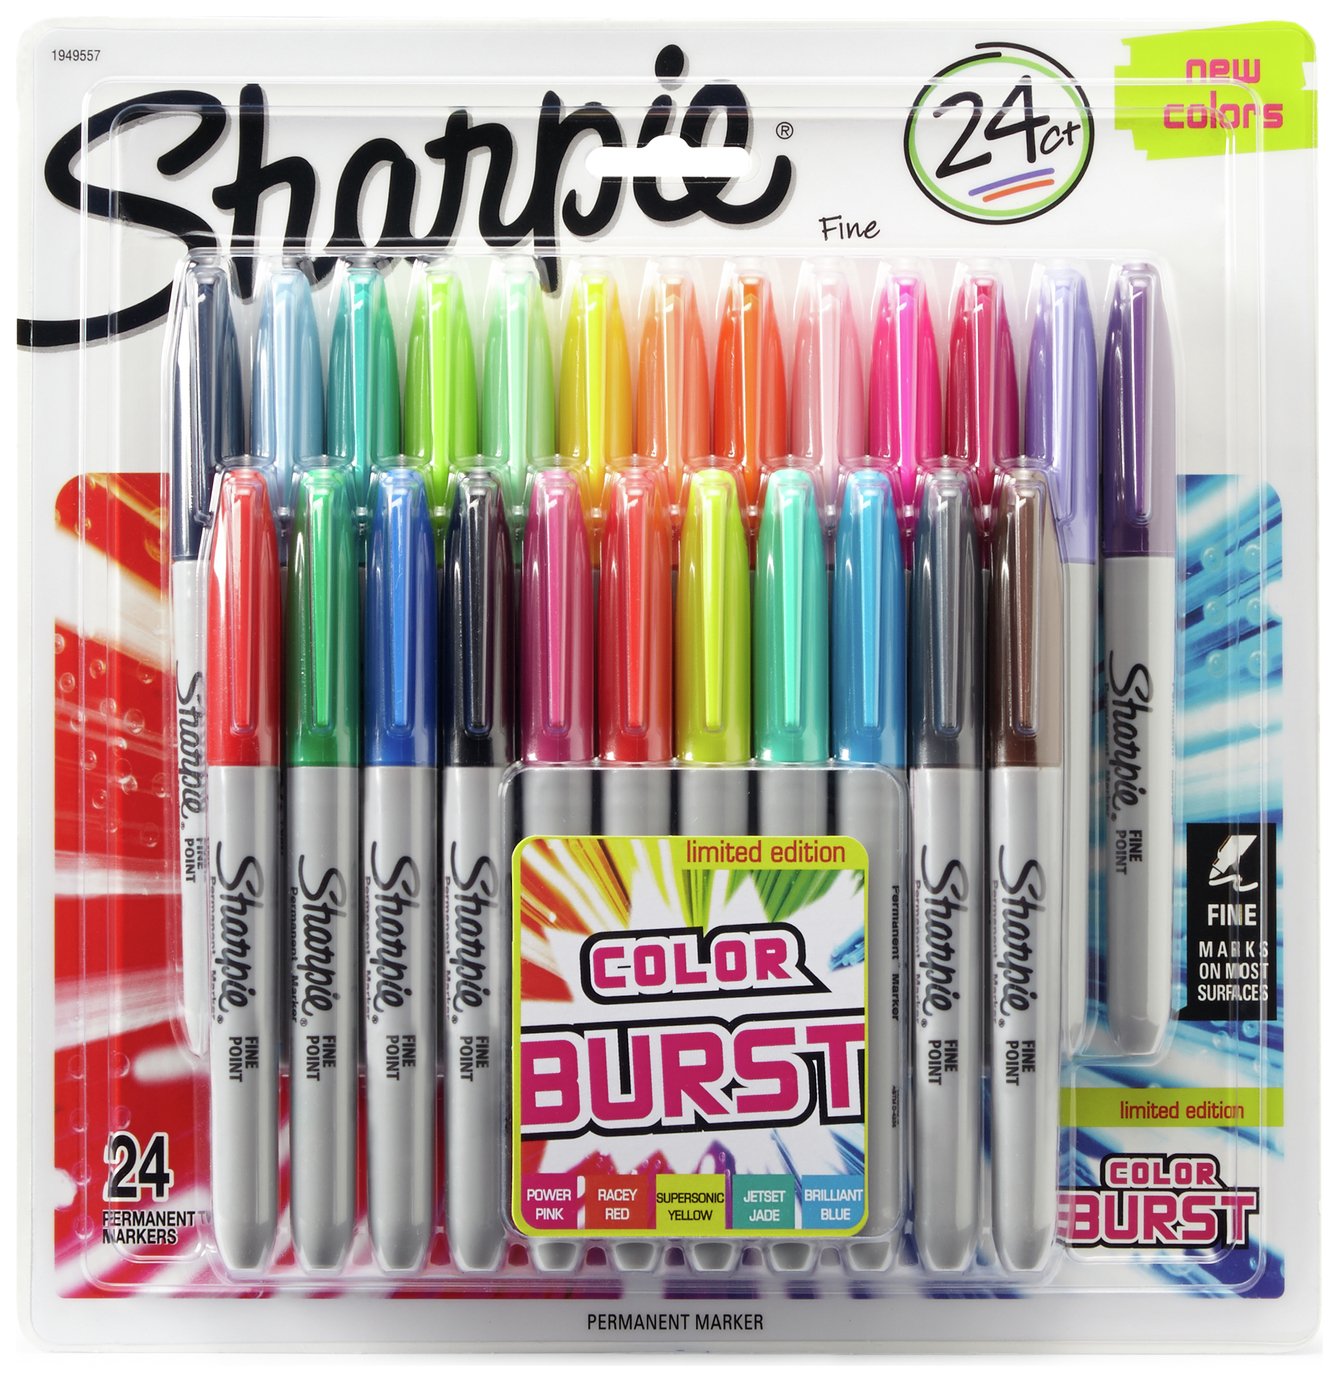 colour pens set